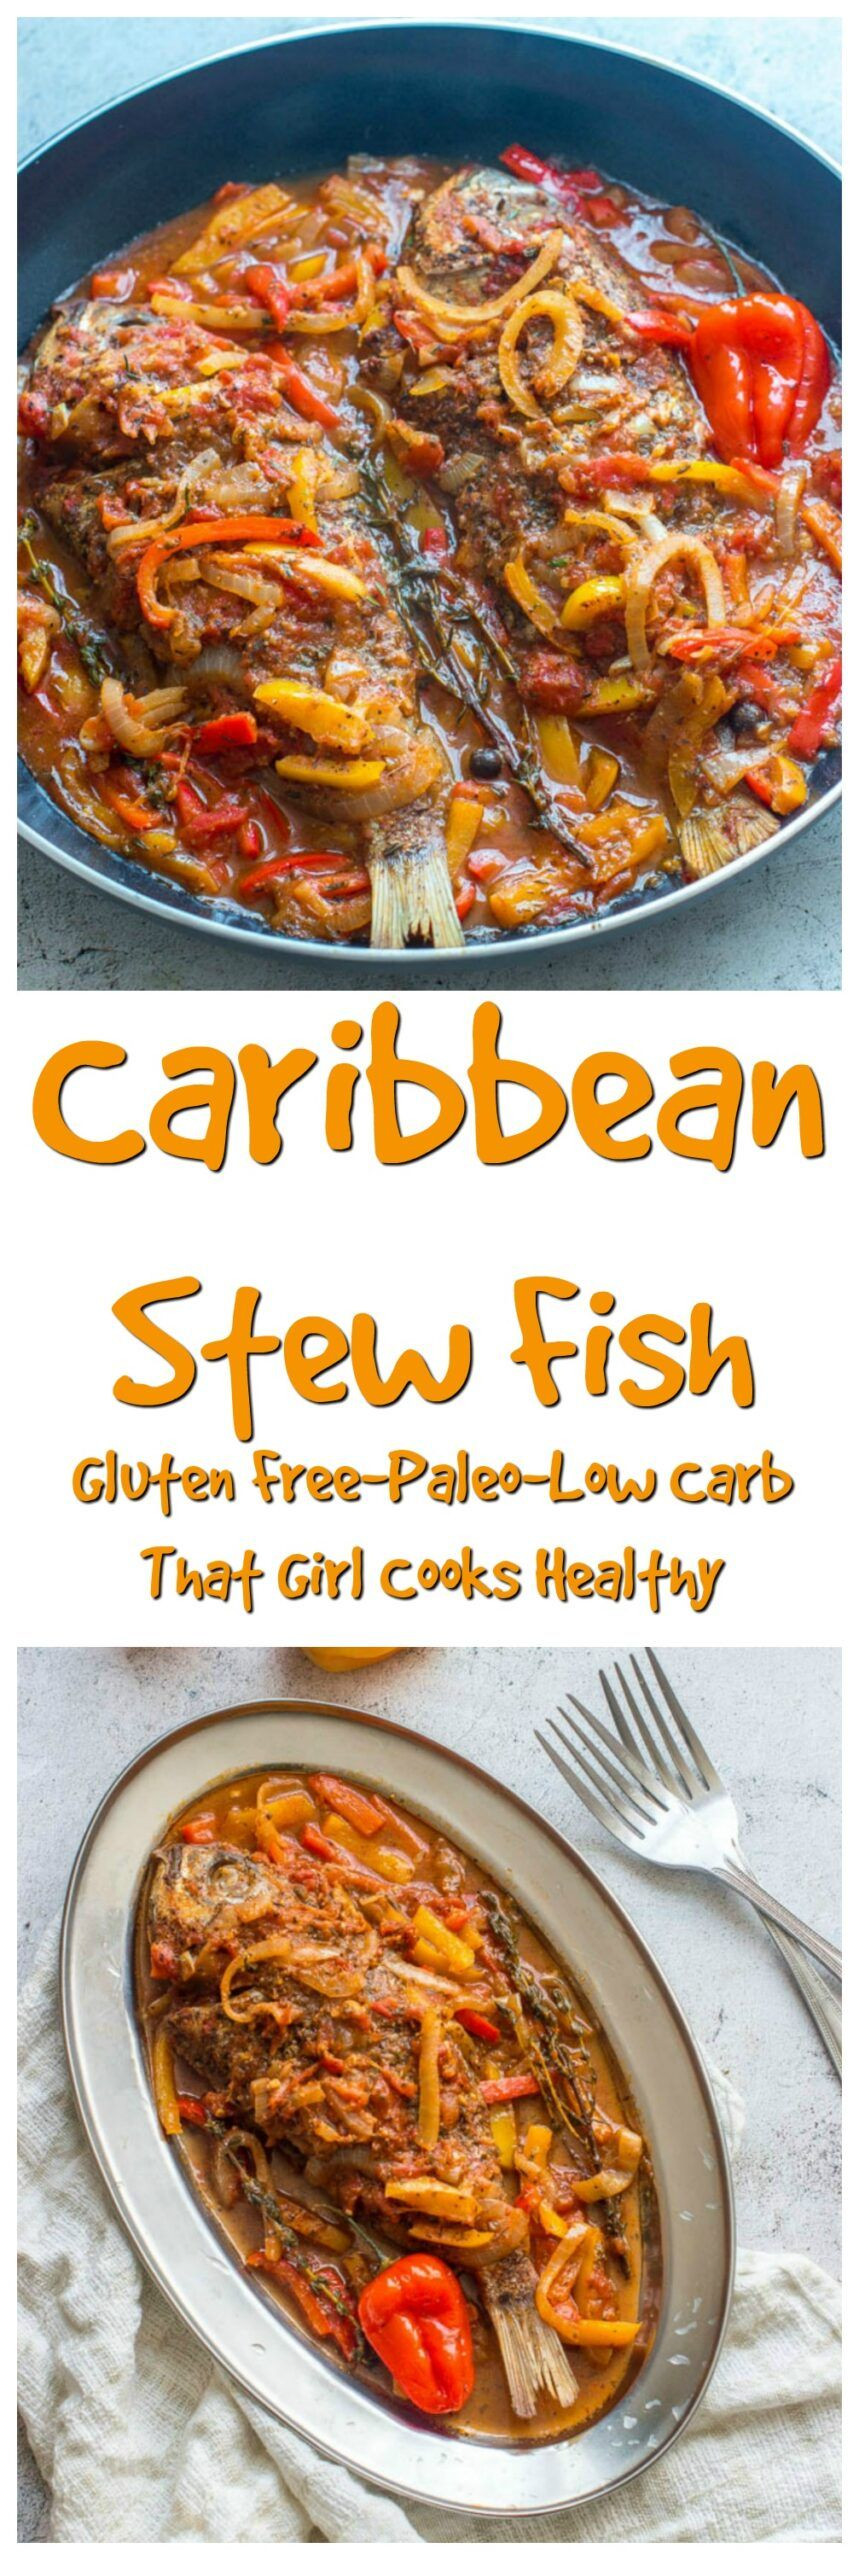 Caribbean Fish Recipes
 Caribbean Stewed Fish